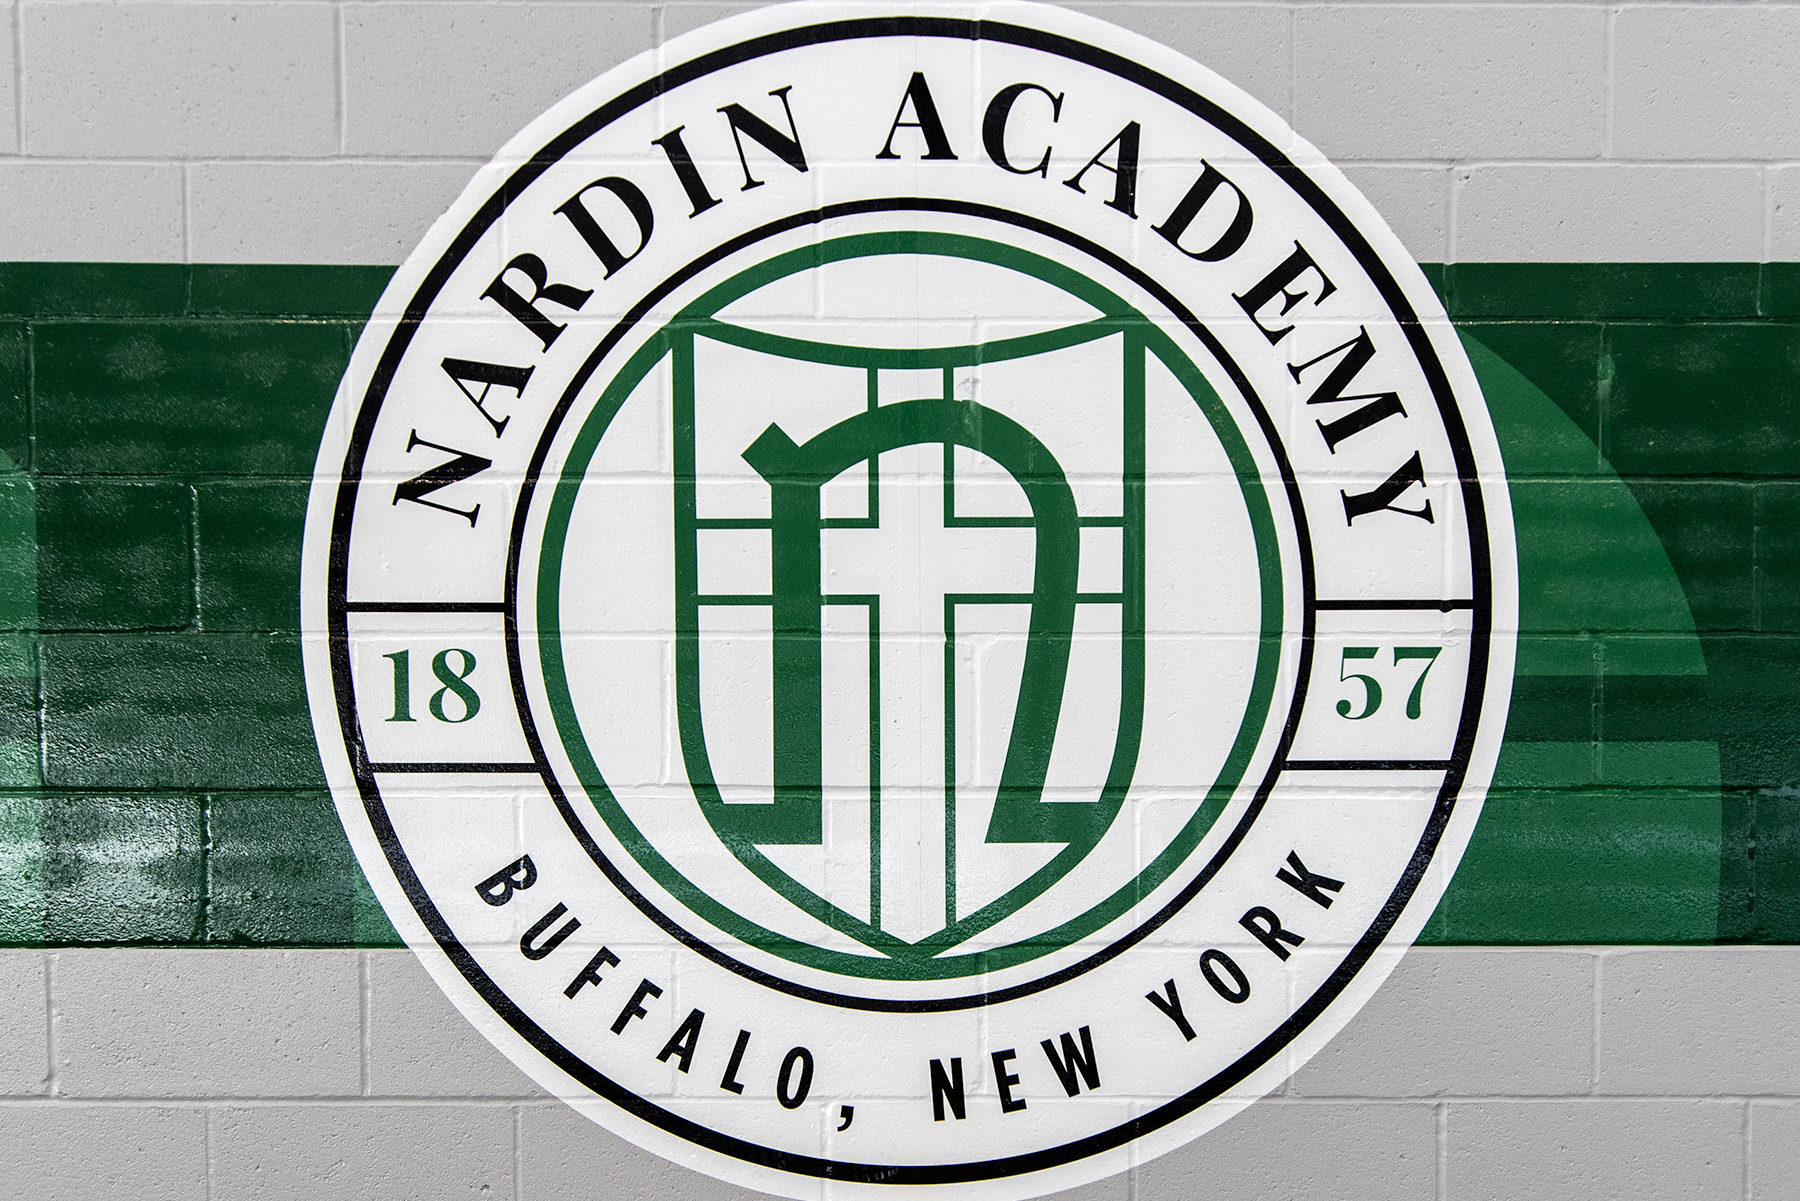 nardin-academy-gymnasium-and-wellness-center-schneider-architectural